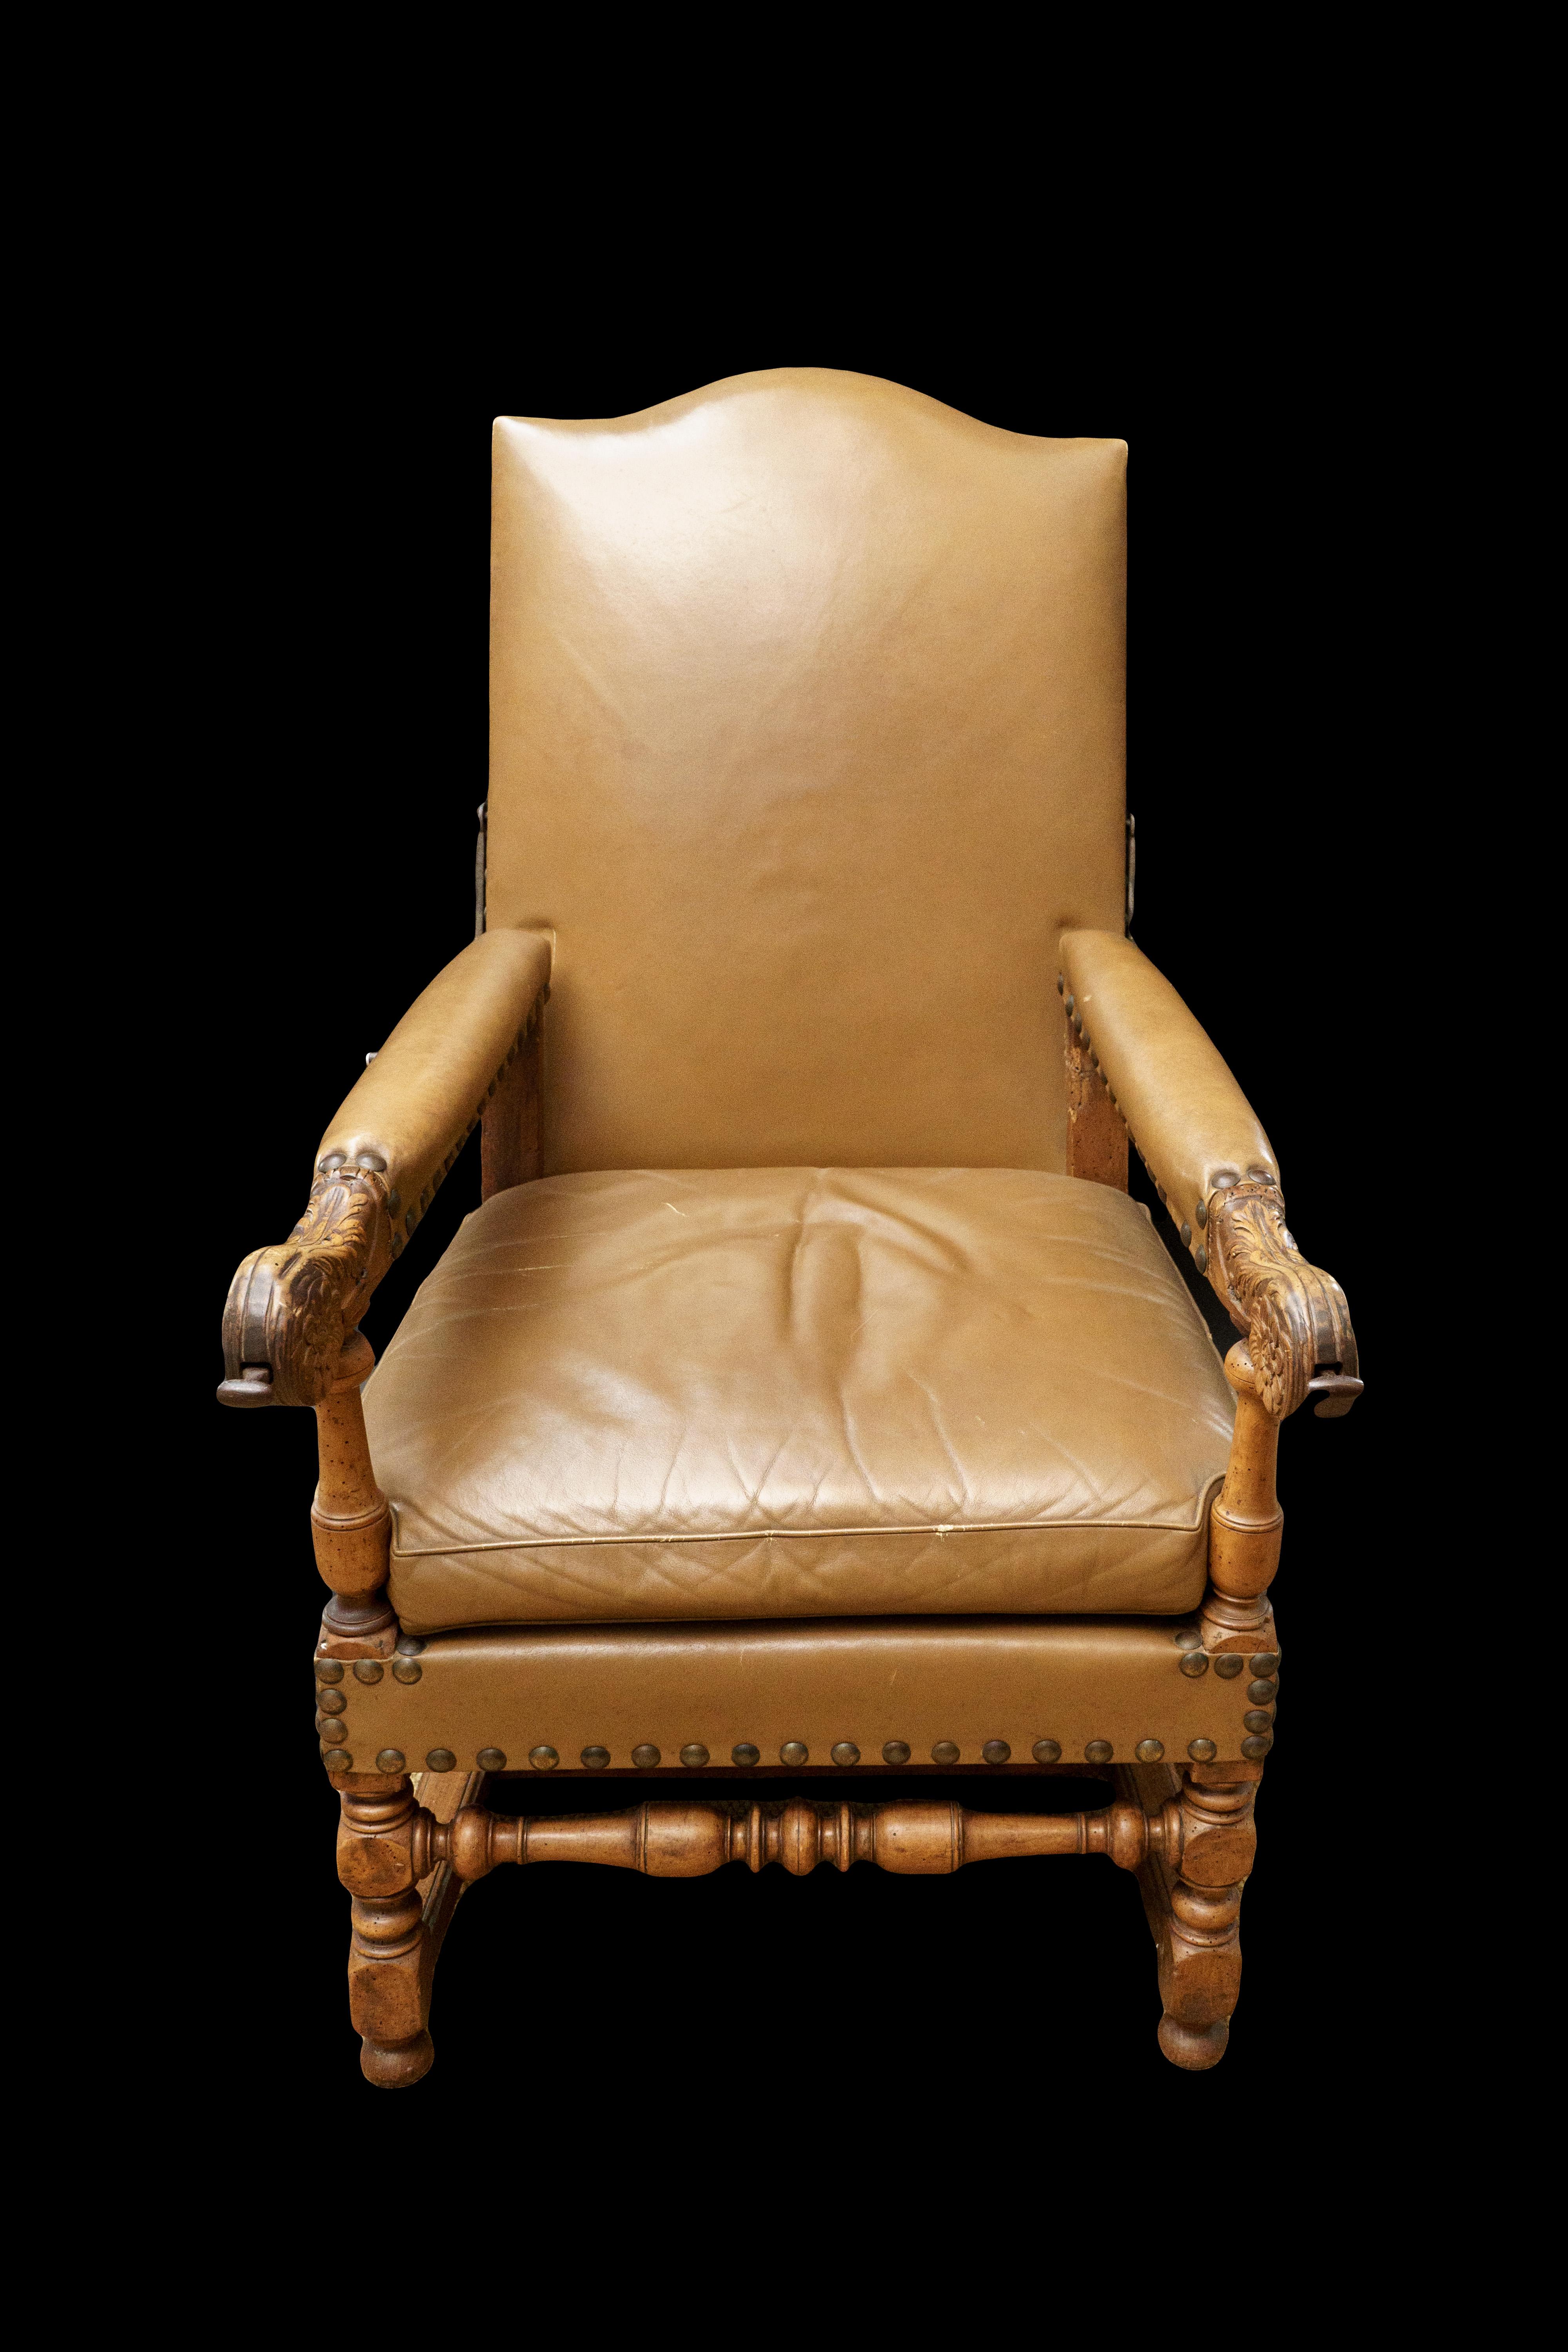 Cette élégante chaise longue Louis XIV est un exemple étonnant de mobilier de campagne français du XVIIe siècle et une pièce très rare. Le mécanisme métallique de la chaise permet à l'utilisateur de régler le dossier en position inclinée, ce qui